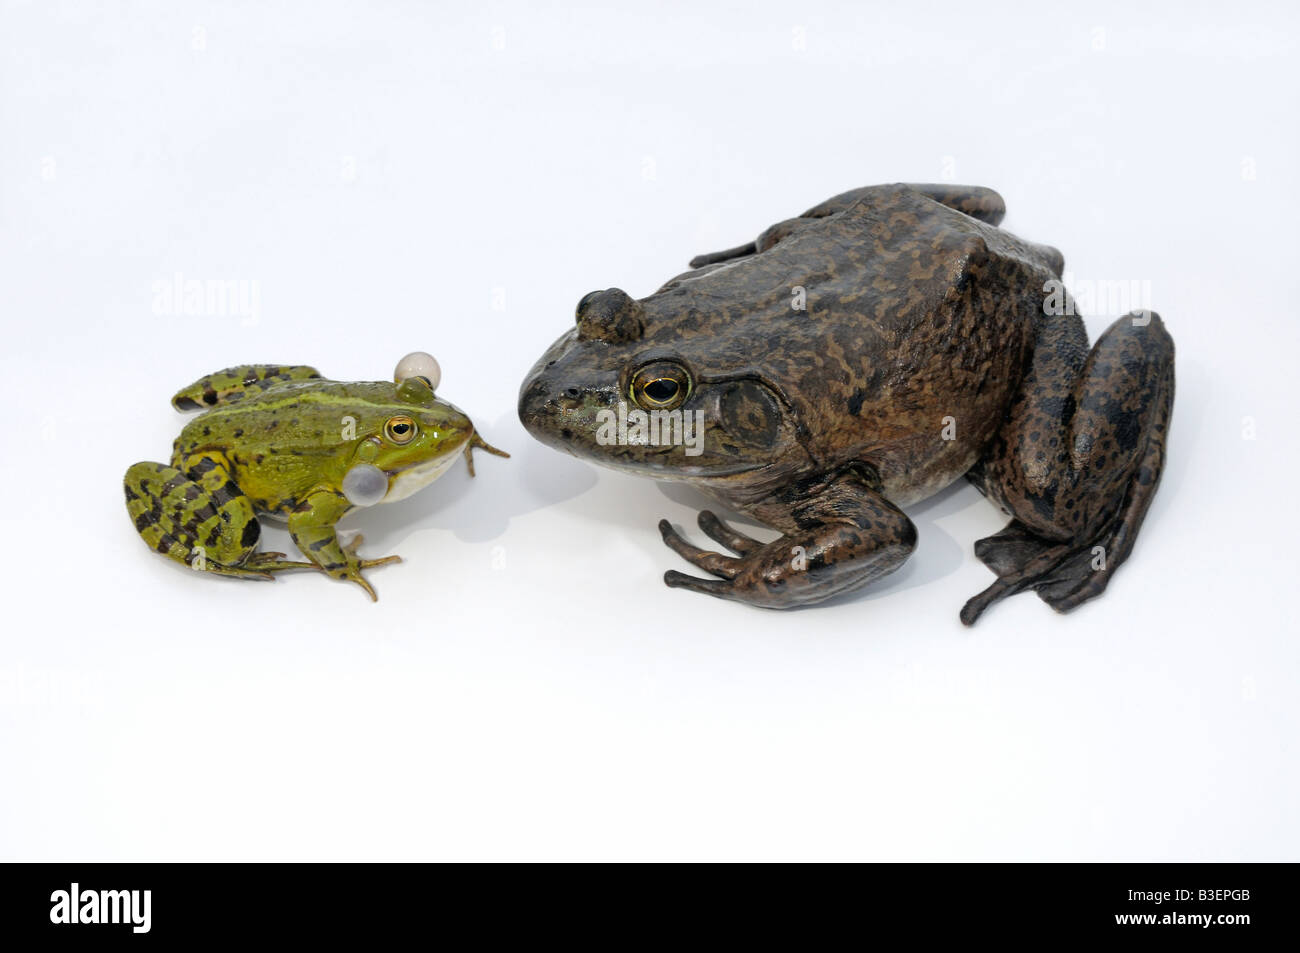 American Bullfrog (Rana catesbeiana), femmina adulta accanto a una fonazione Rana Verde (Rana esculenta) per confronto di dimensioni Foto Stock